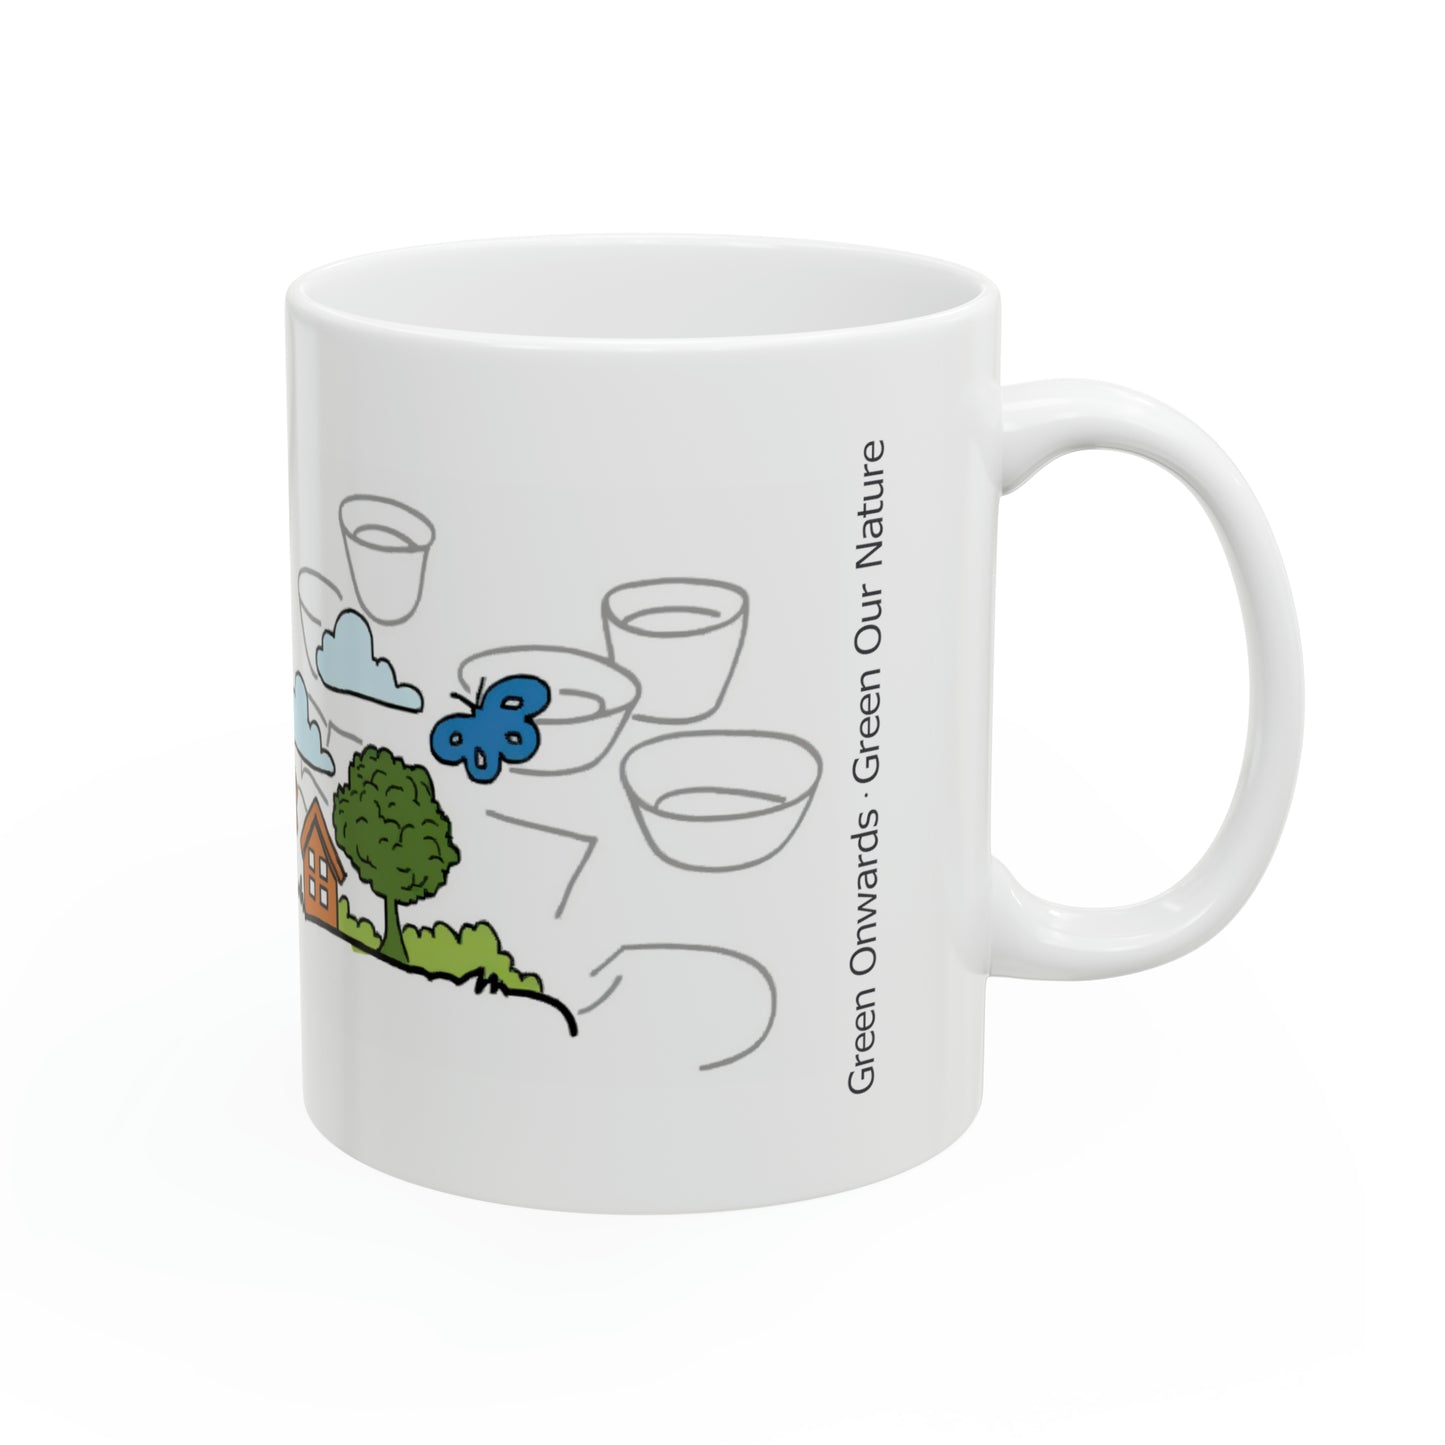 Eco-Friendly - Ceramic Mug 11oz - Living of Green